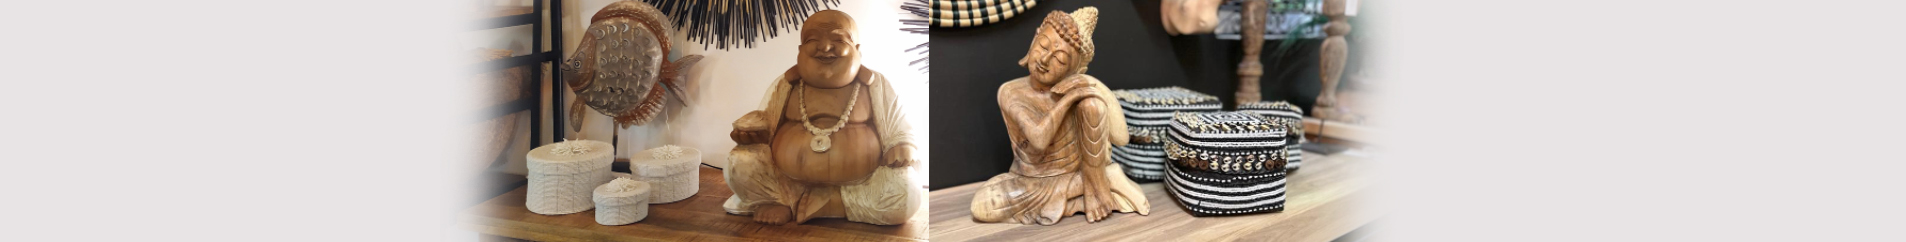 Bouddha en bois sculpté